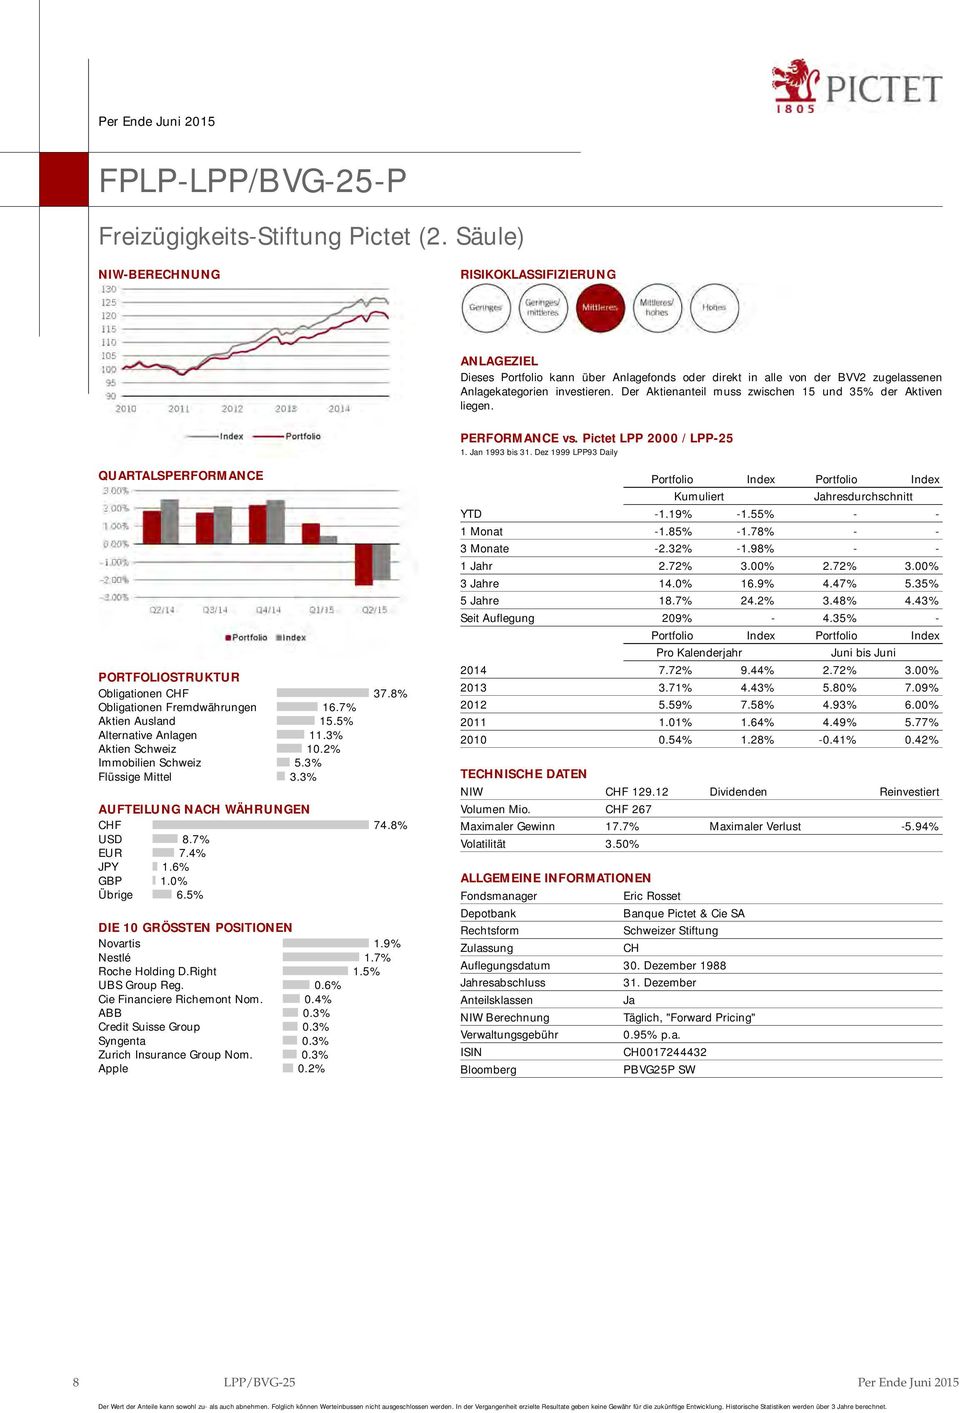 3% Aktien Schweiz 10.2% Immobilien Schweiz 5.3% Flüssige Mittel 3.3% AUFTEILUNG NA WÄHRUNGEN F 74.8% USD 8.7% EUR 7.4% JPY 1.6% GBP 1.0% Übrige 6.5% DIE 10 GRÖSSTEN POSITIONEN Novartis 1.9% Nestlé 1.